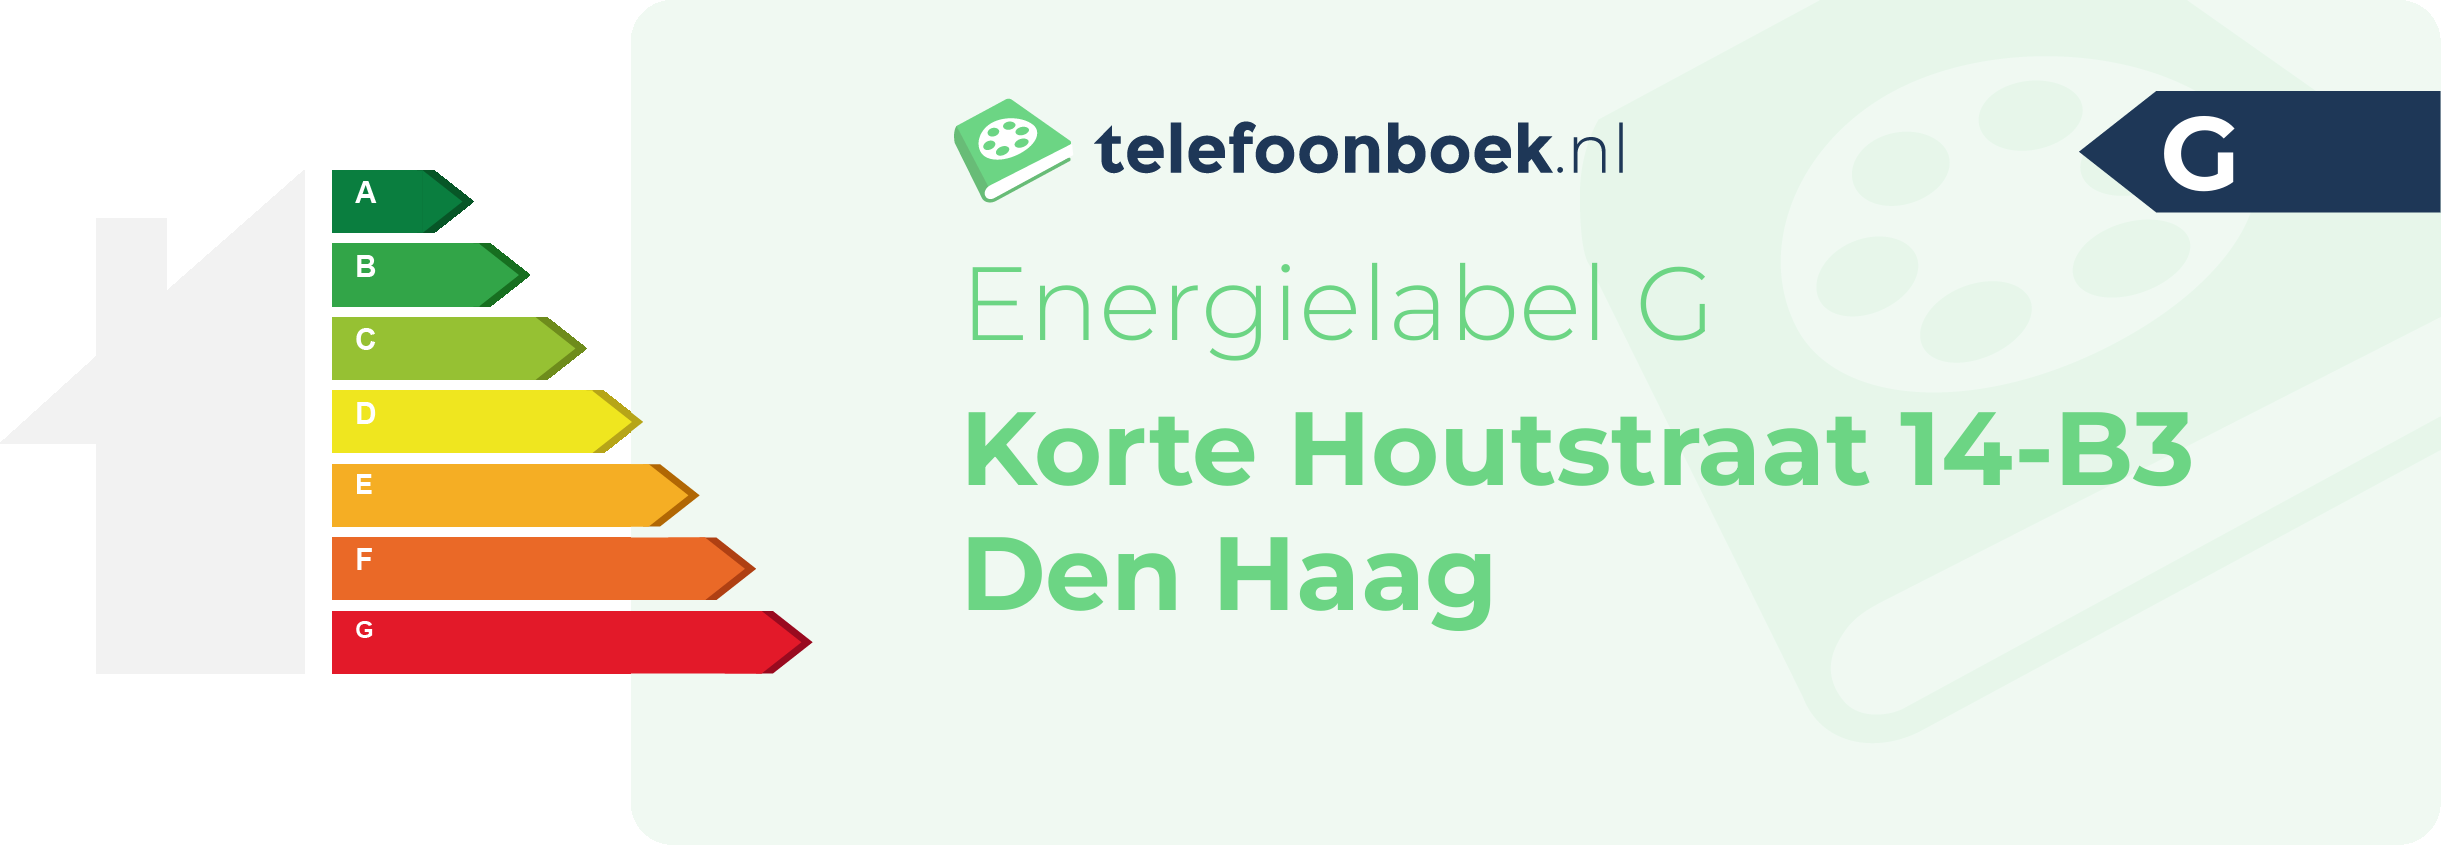 Energielabel Korte Houtstraat 14-B3 Den Haag